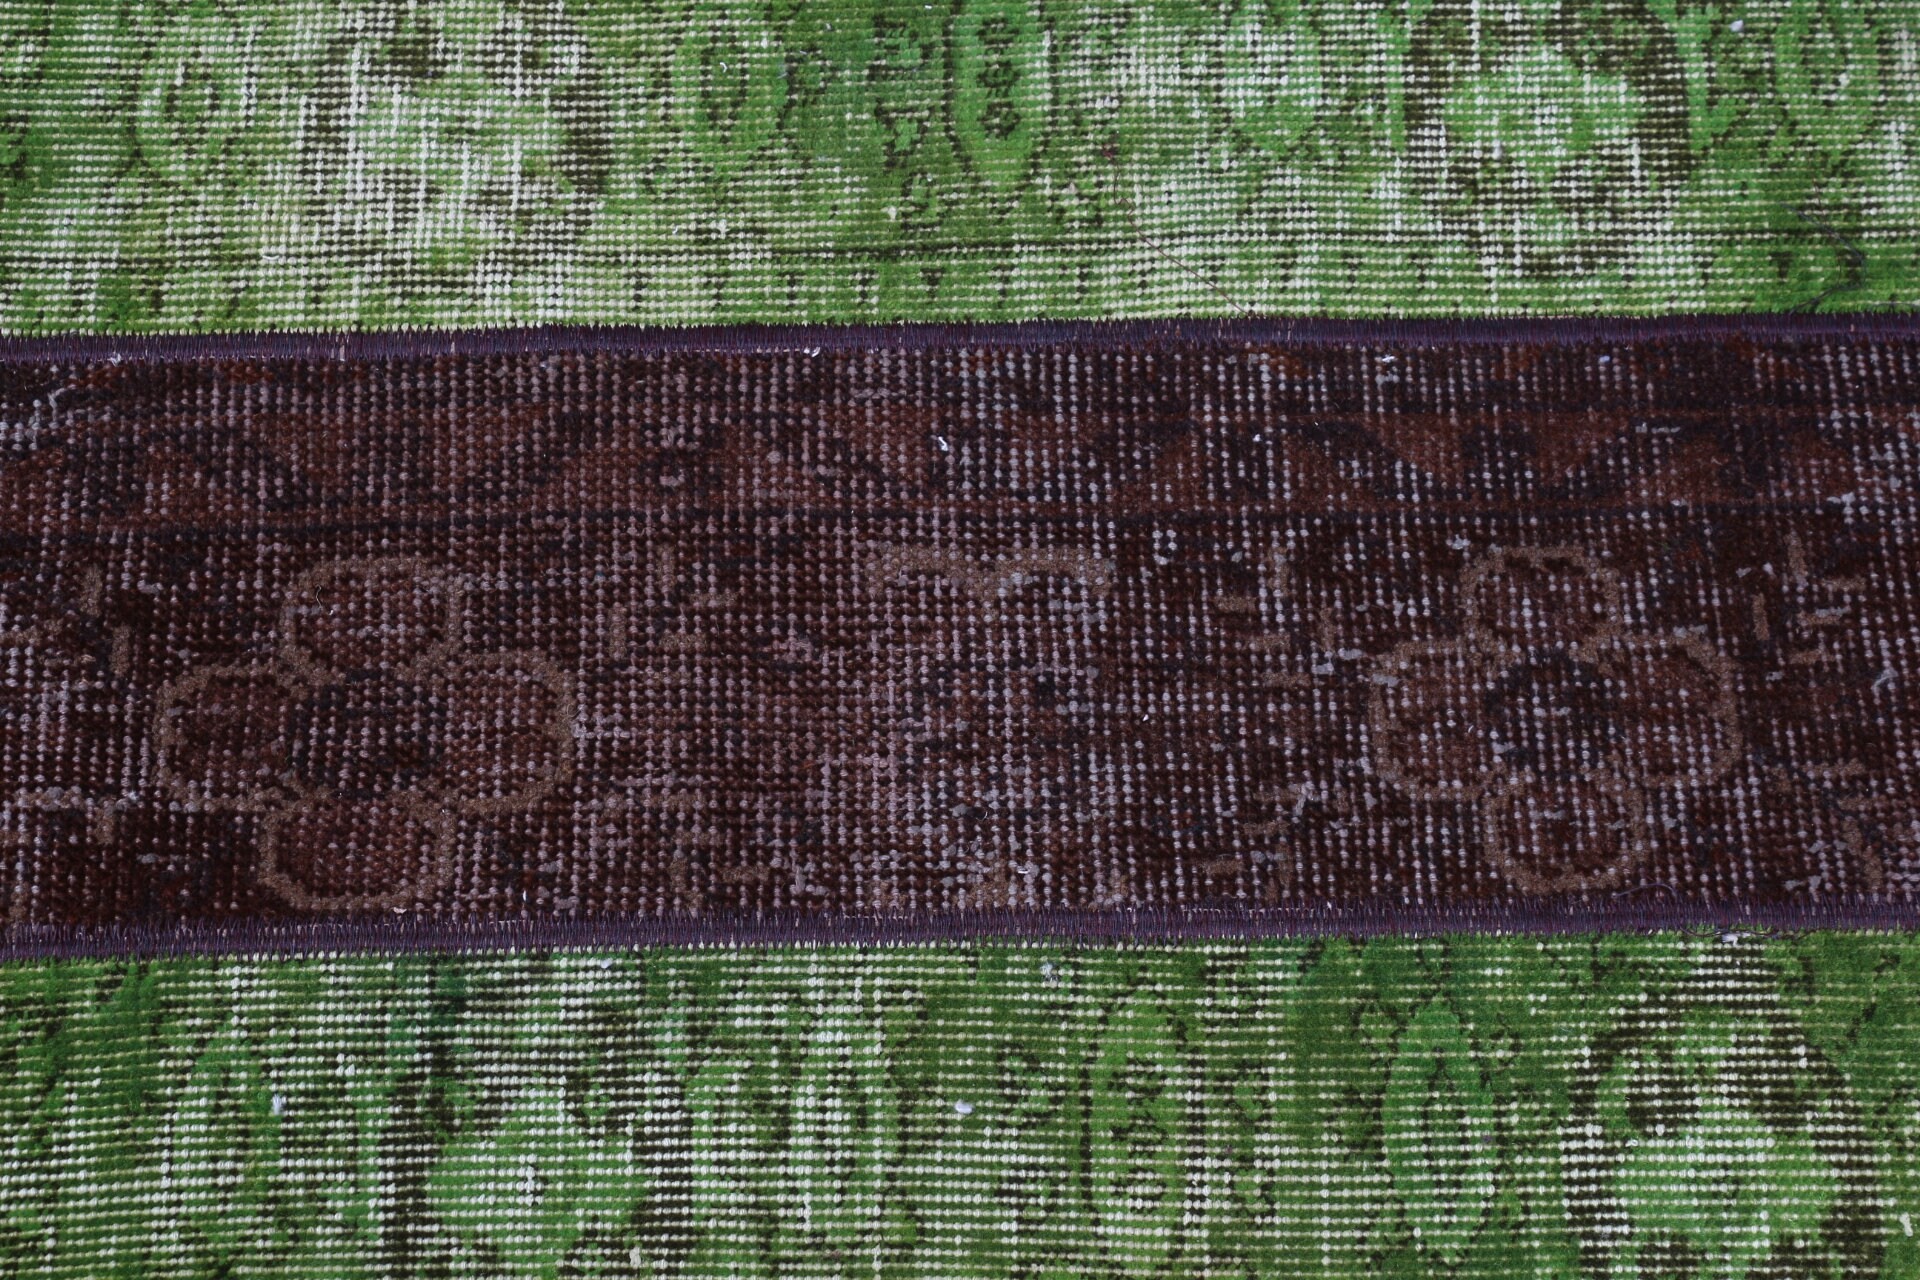 Rugs for Car Mat, Vintage Rugs, Nursery Rug, Green Oriental Rugs, Turkish Rug, 1.9x4 ft Small Rug, Floor Rug, Entry Rug, Antique Rug